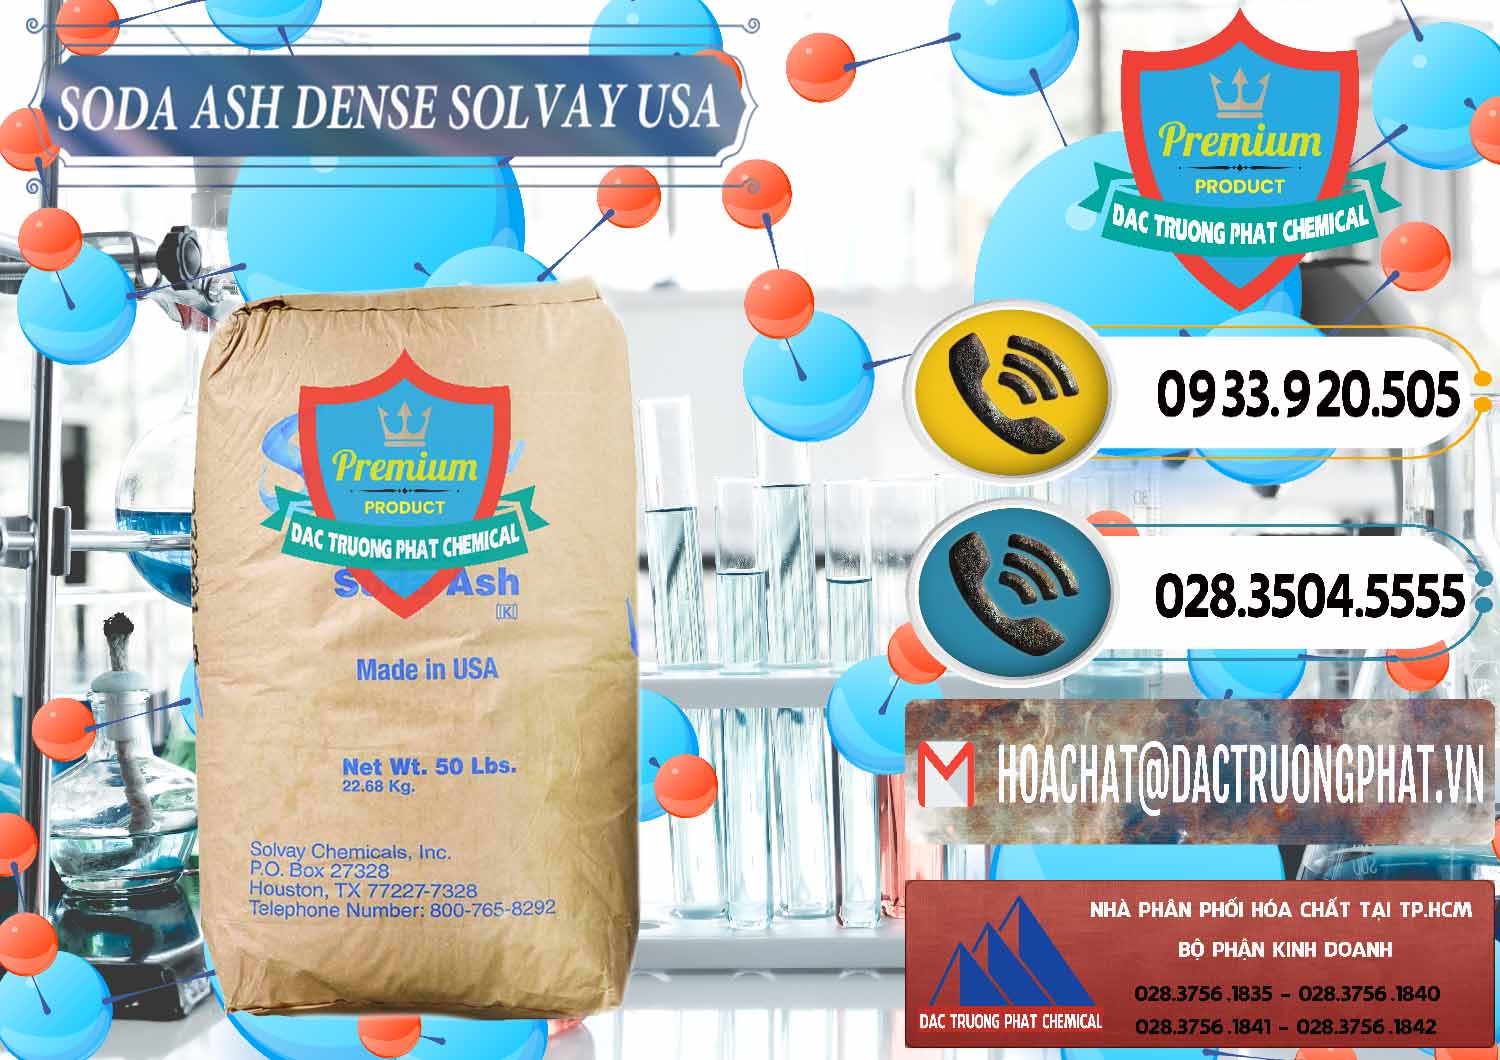 Cty kinh doanh _ bán Soda Ash Dense - NA2CO3 Solvay Mỹ USA - 0337 - Đơn vị chuyên phân phối & nhập khẩu hóa chất tại TP.HCM - hoachatdetnhuom.vn